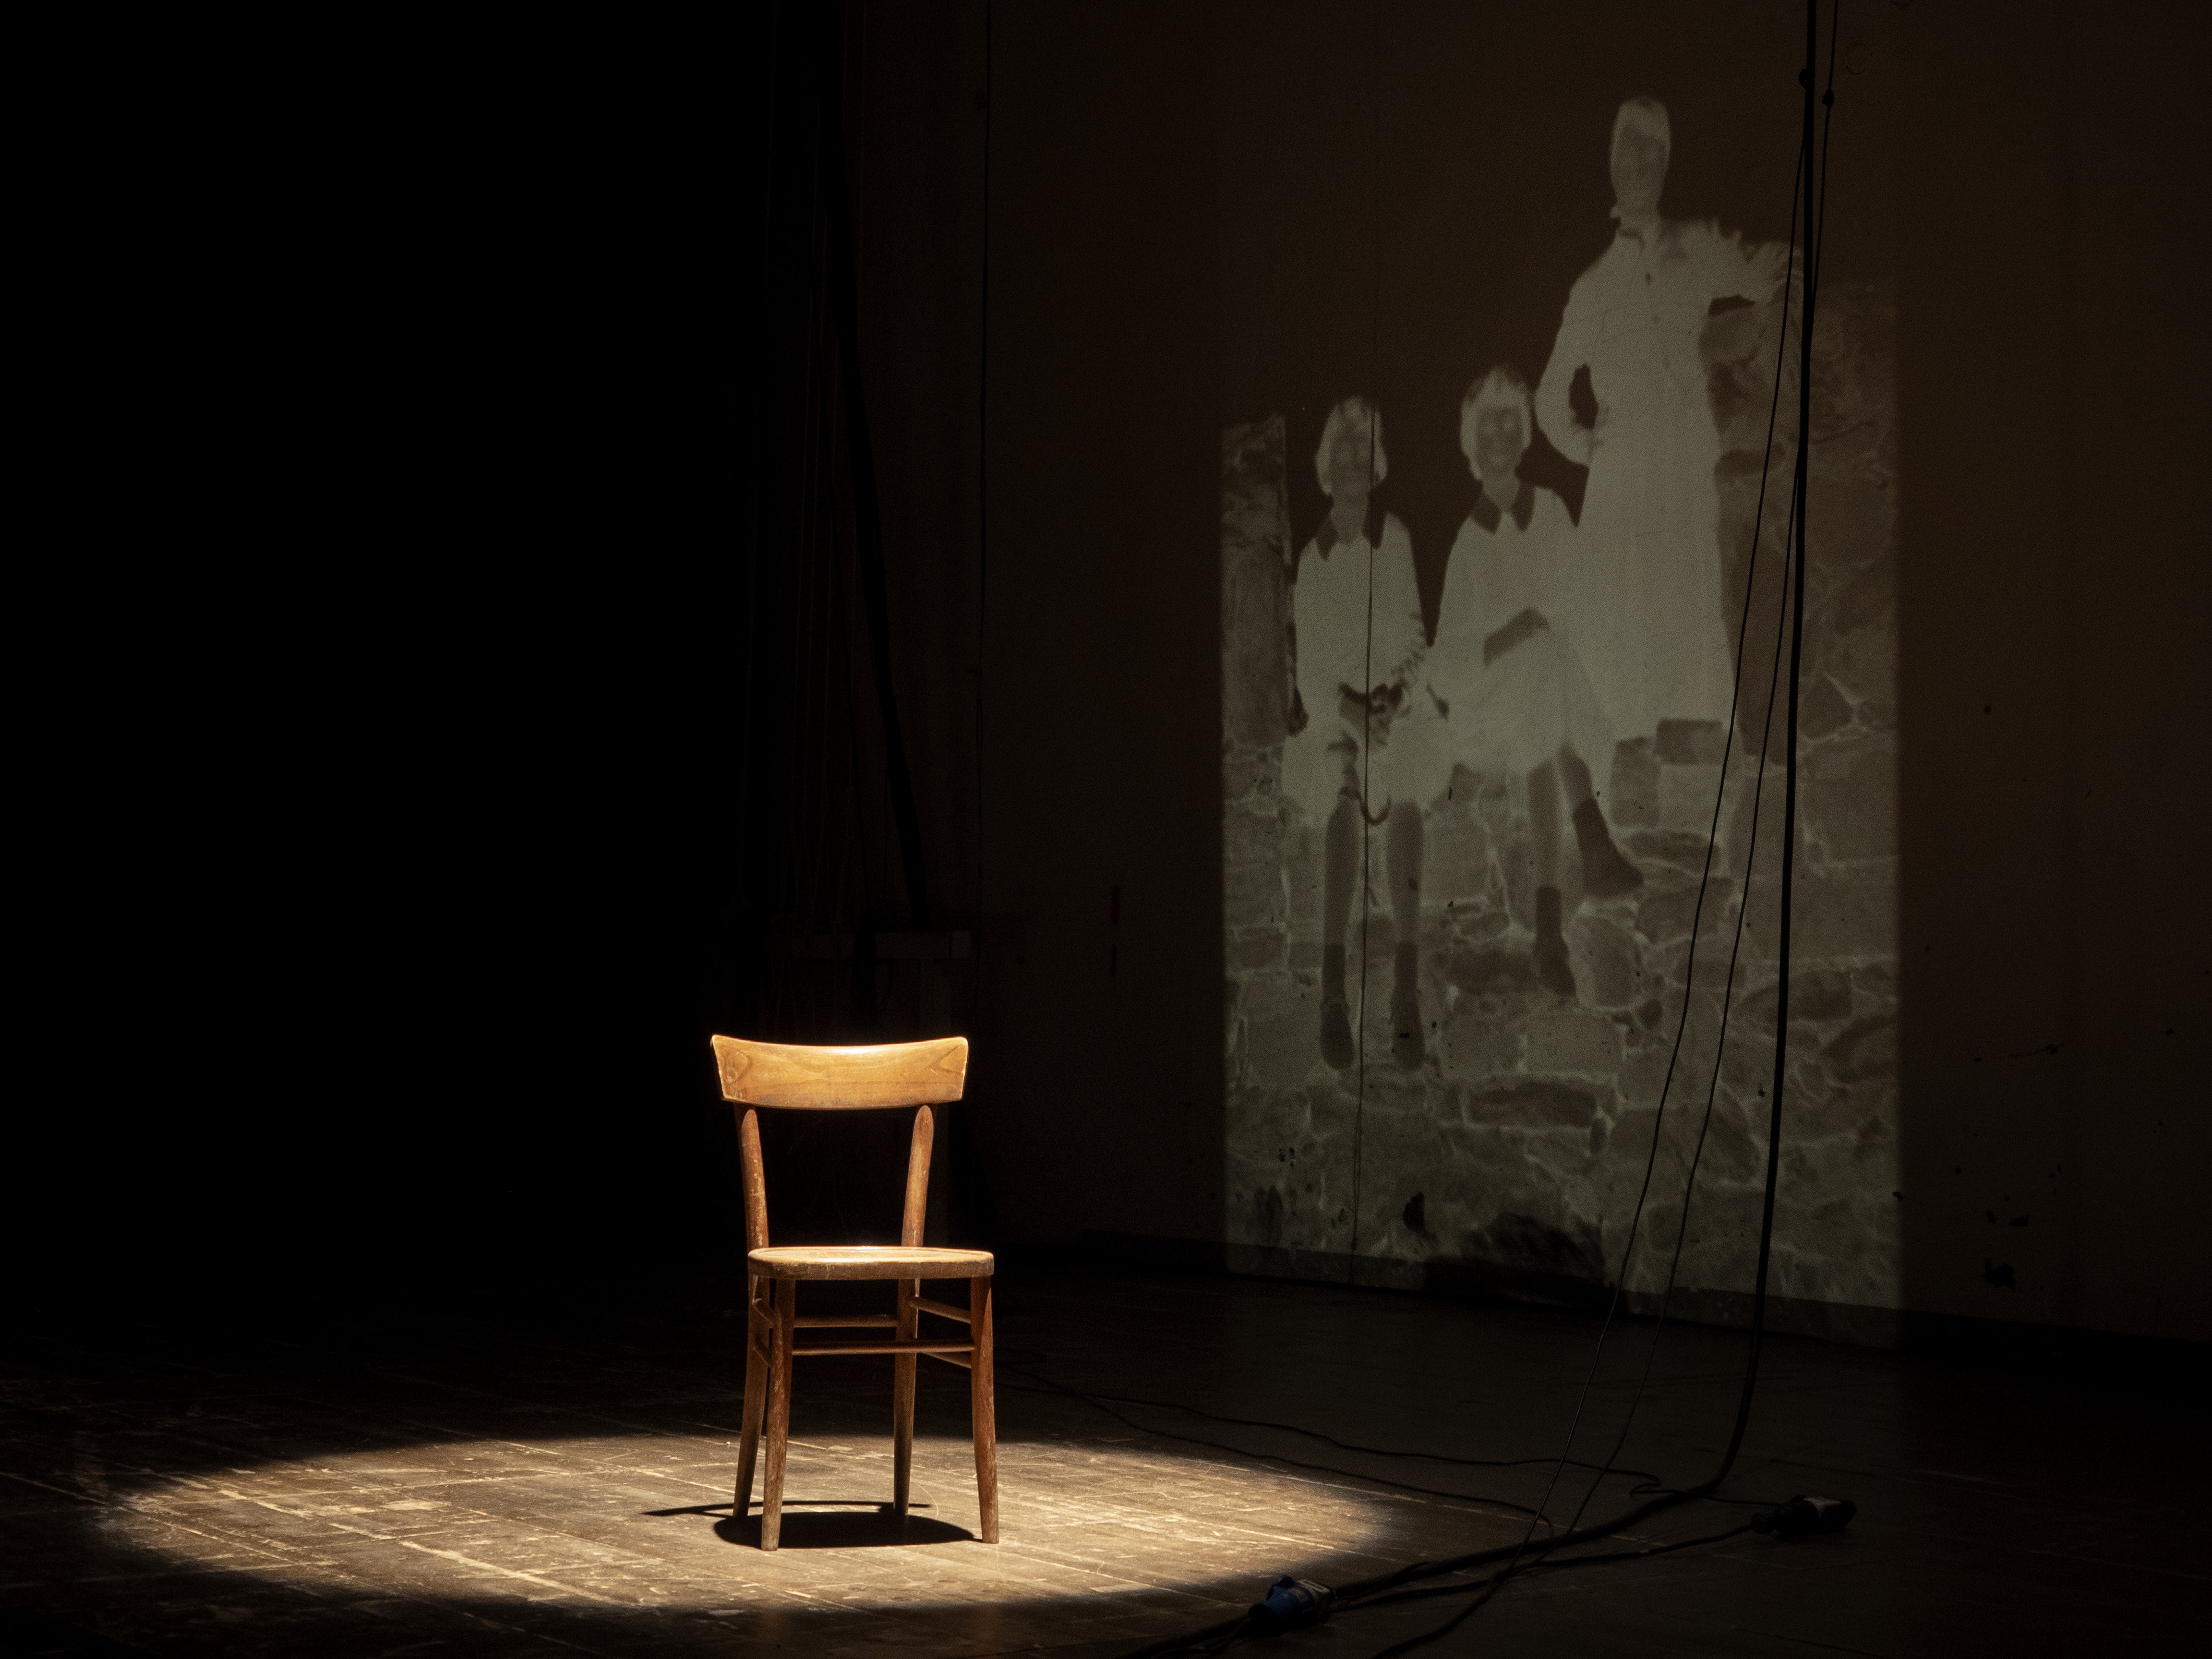 Man sieht einen Holzstuhl auf einer Bühne, der Stuhl ist mit einem Scheinwerfer beleuchtet. Im Hintergrund sieht man die Projektion eines alten Fotos.